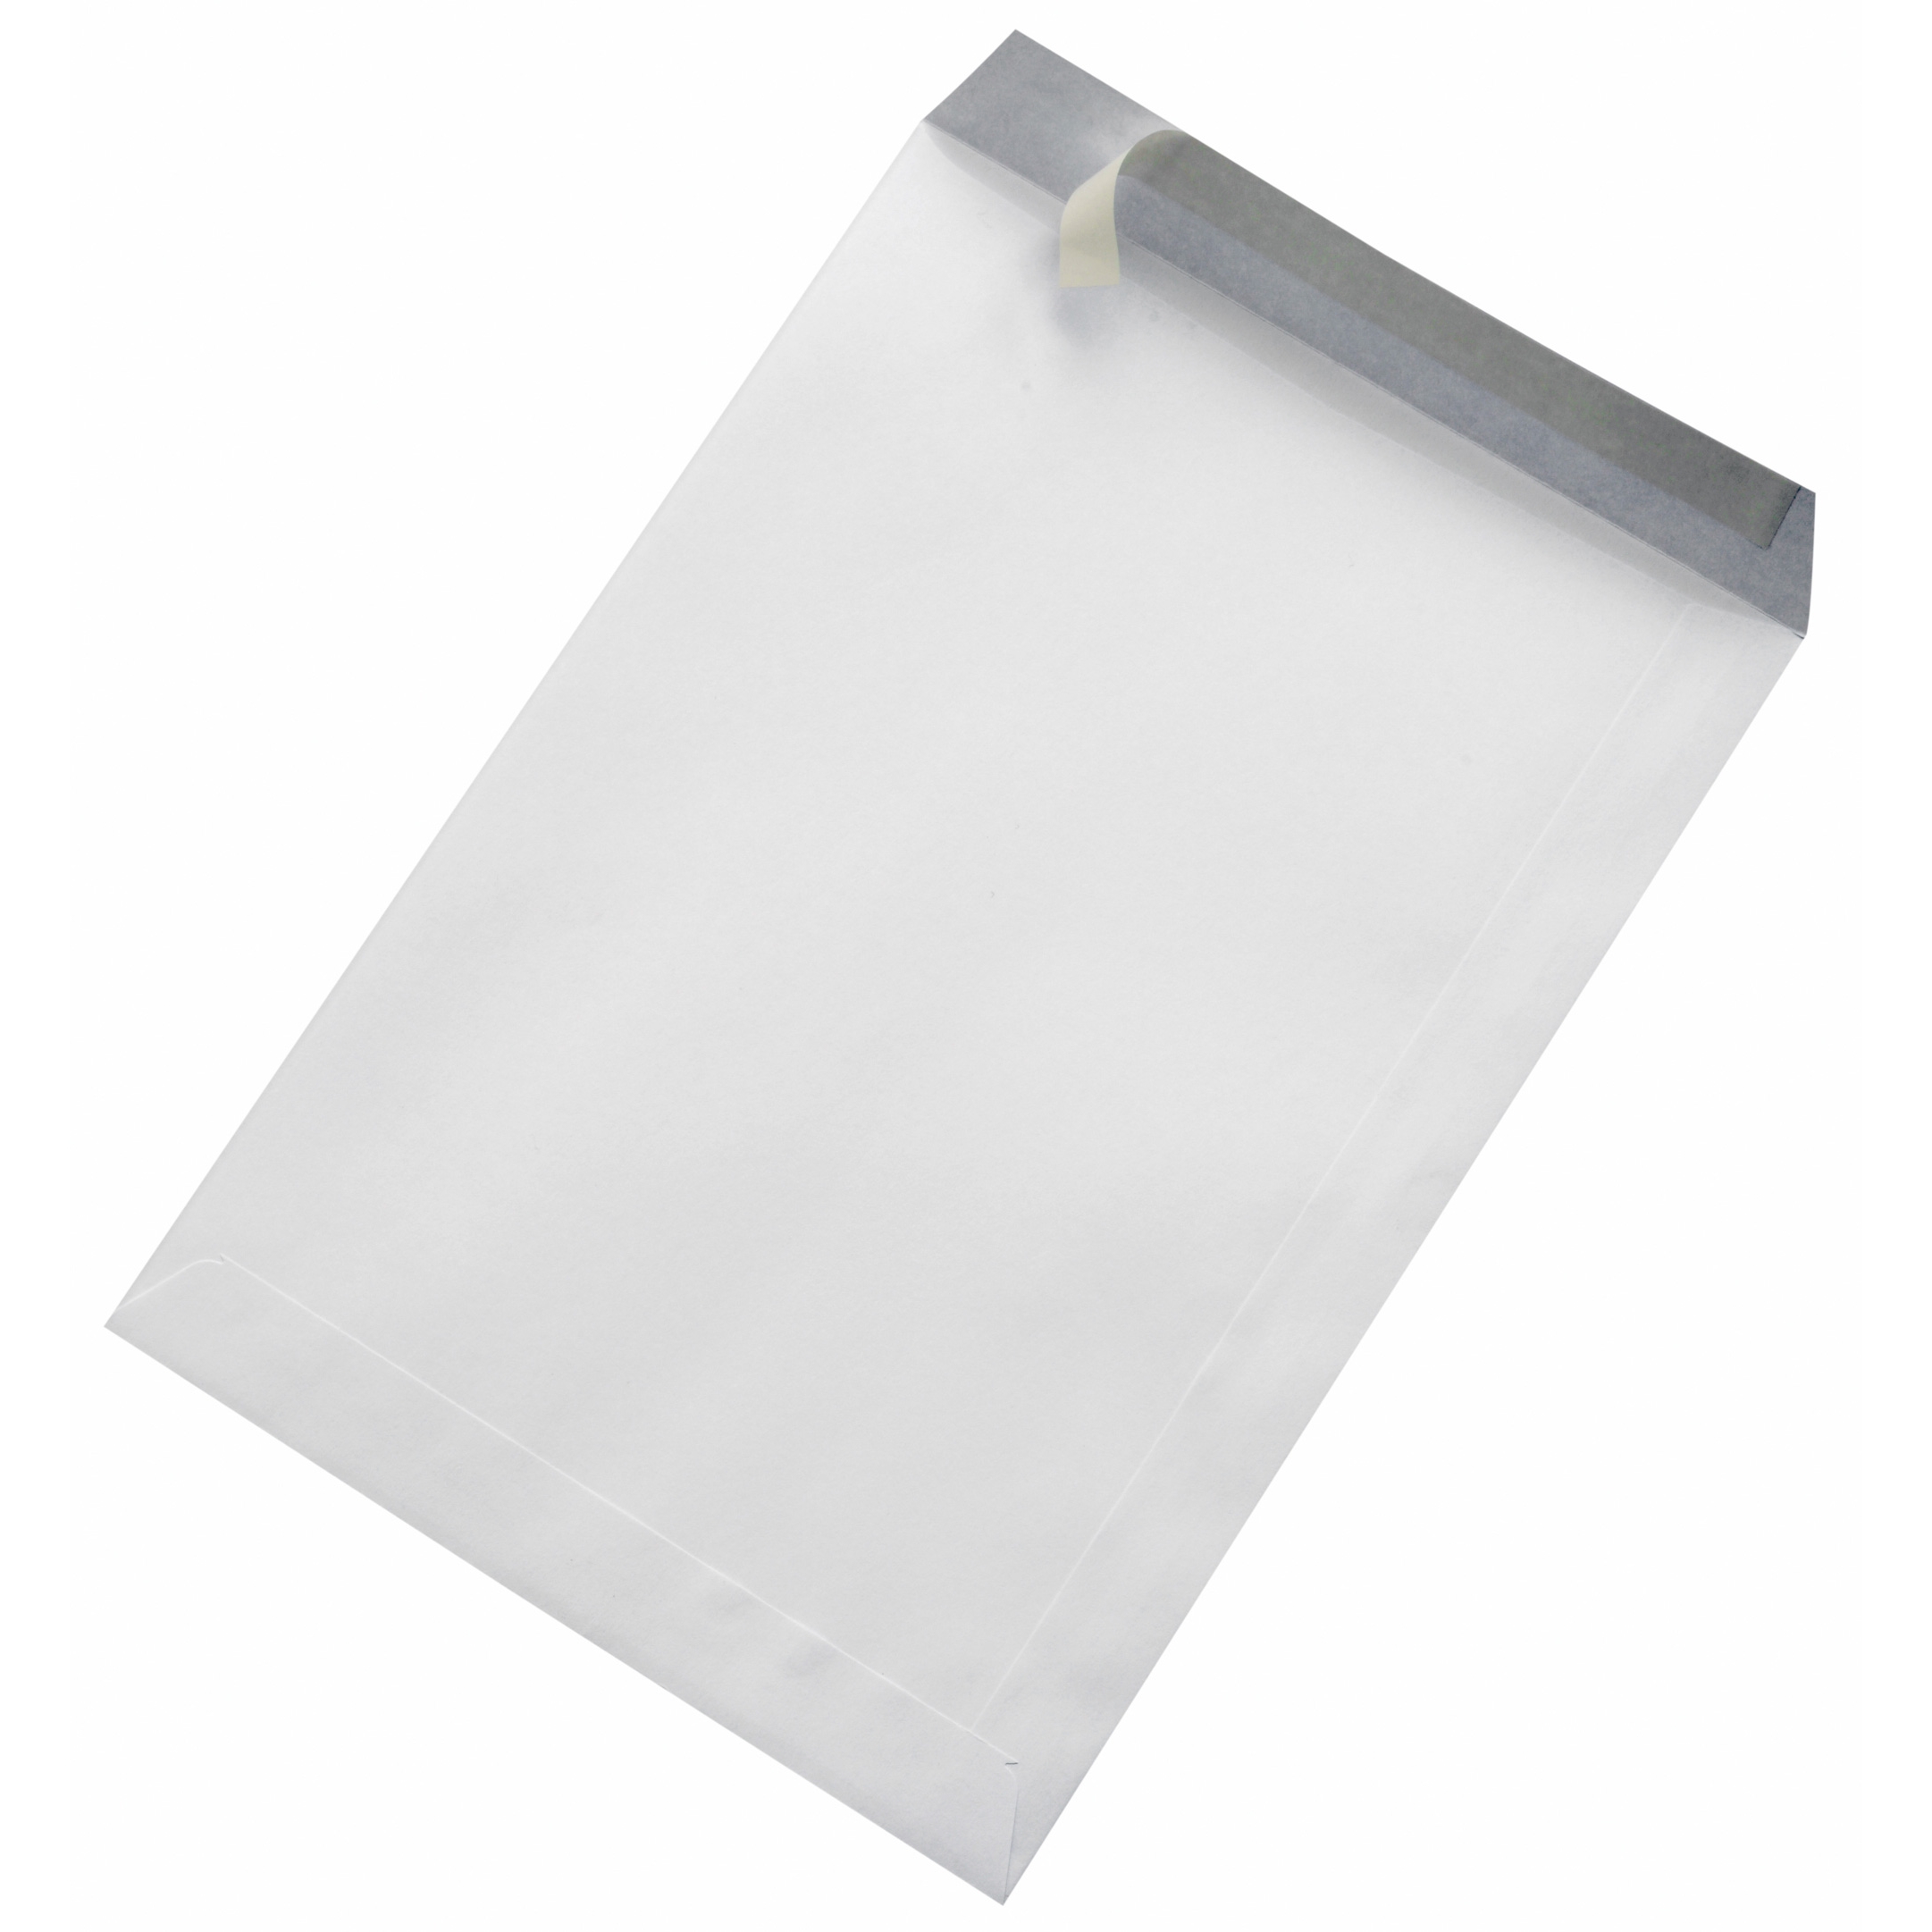 Obchodní taška B5 bílá bez okna se samolepicí páskou, 500ks